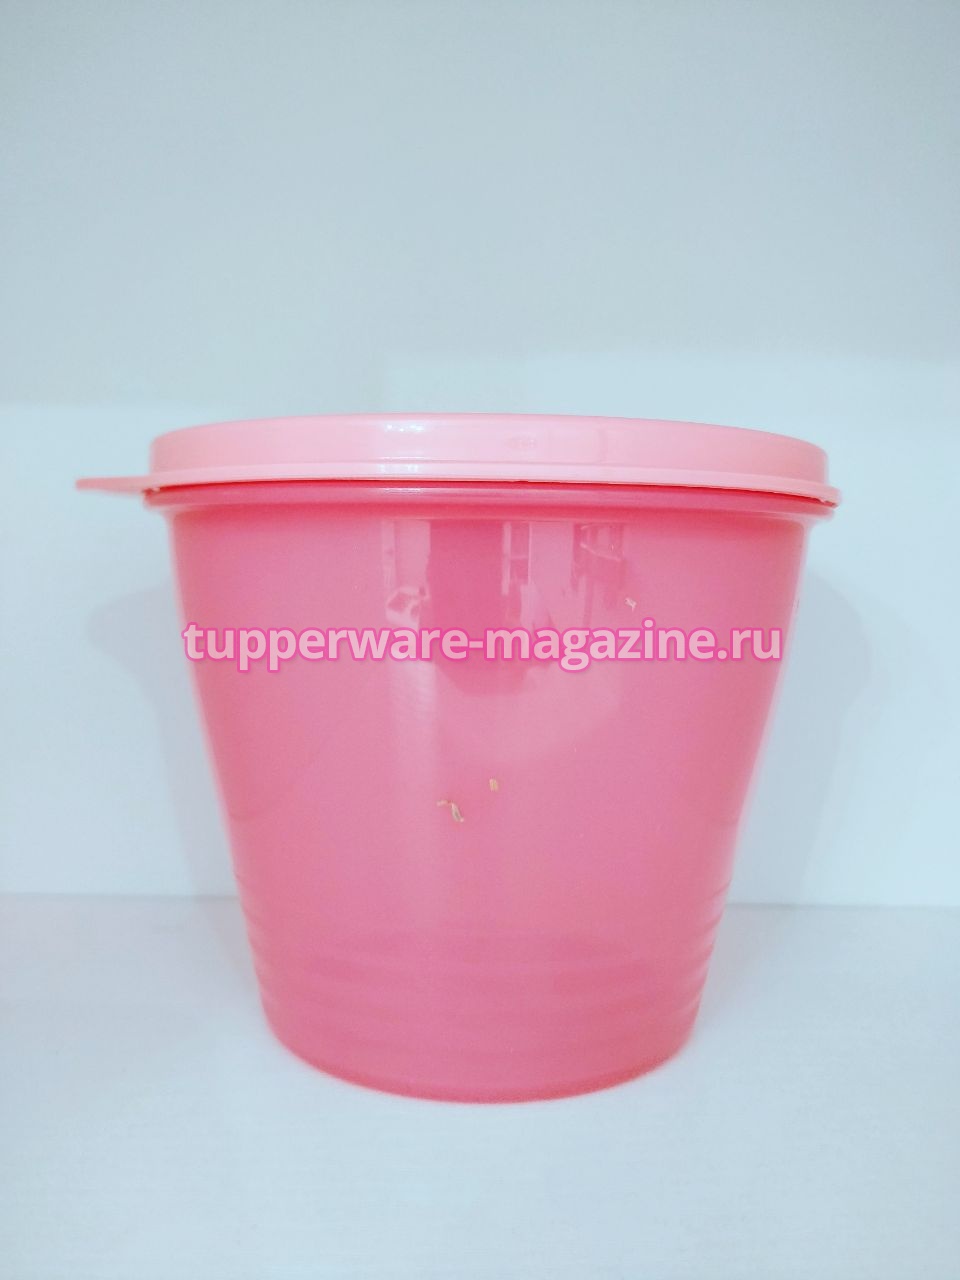 Чаша "Новая классика" 800 мл в розовом цвете